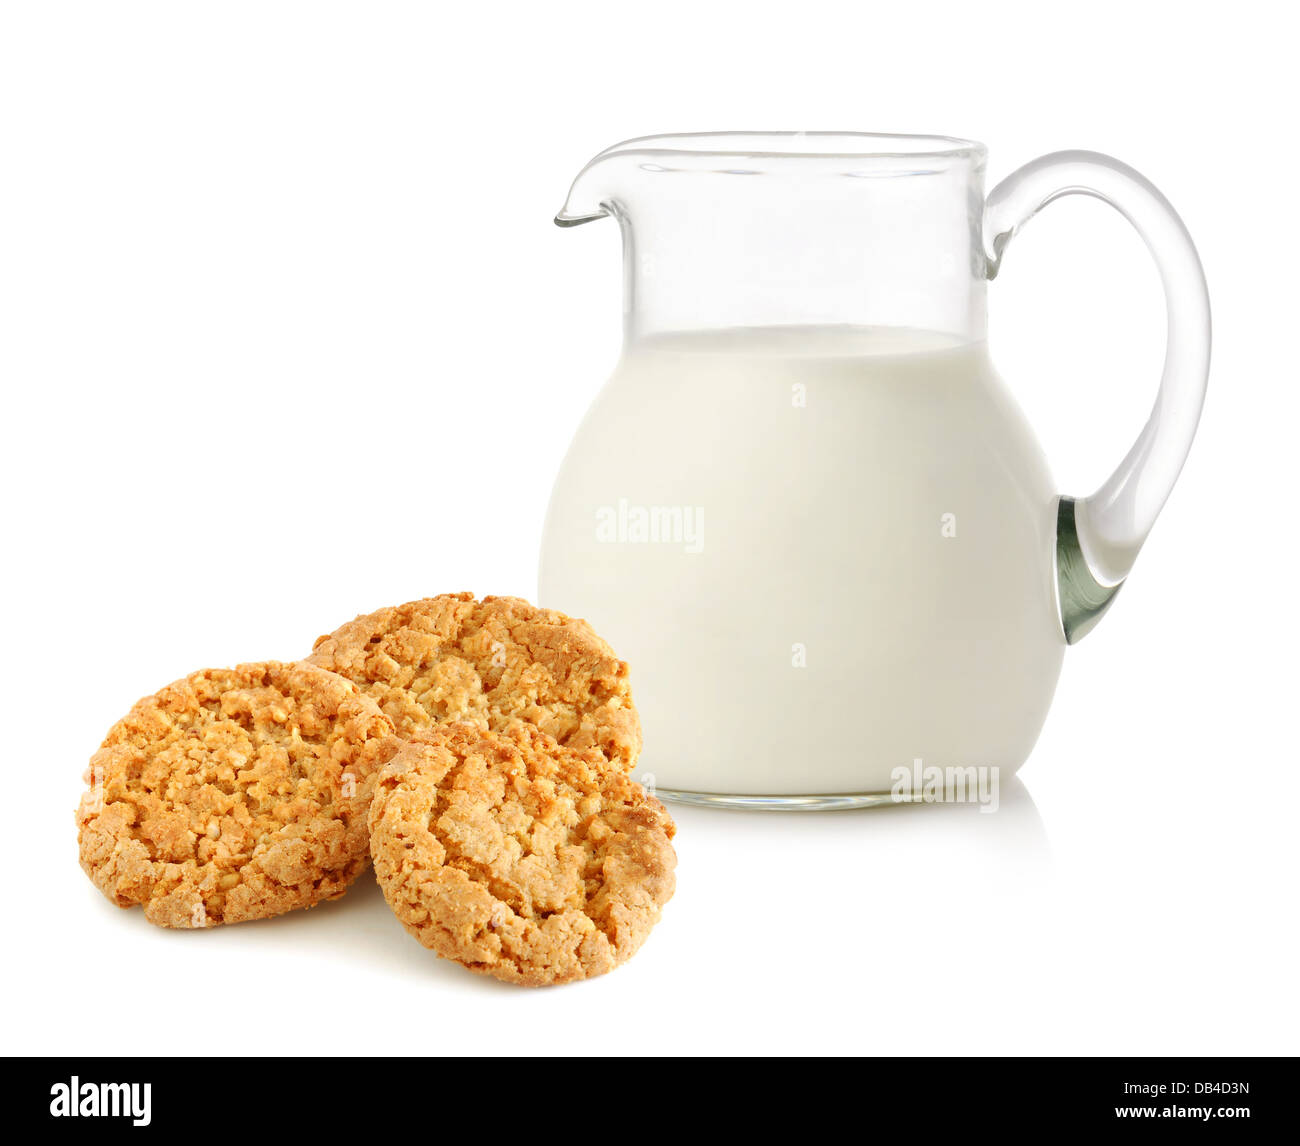 Caraffa di vetro con latte e biscotti su sfondo bianco Foto Stock